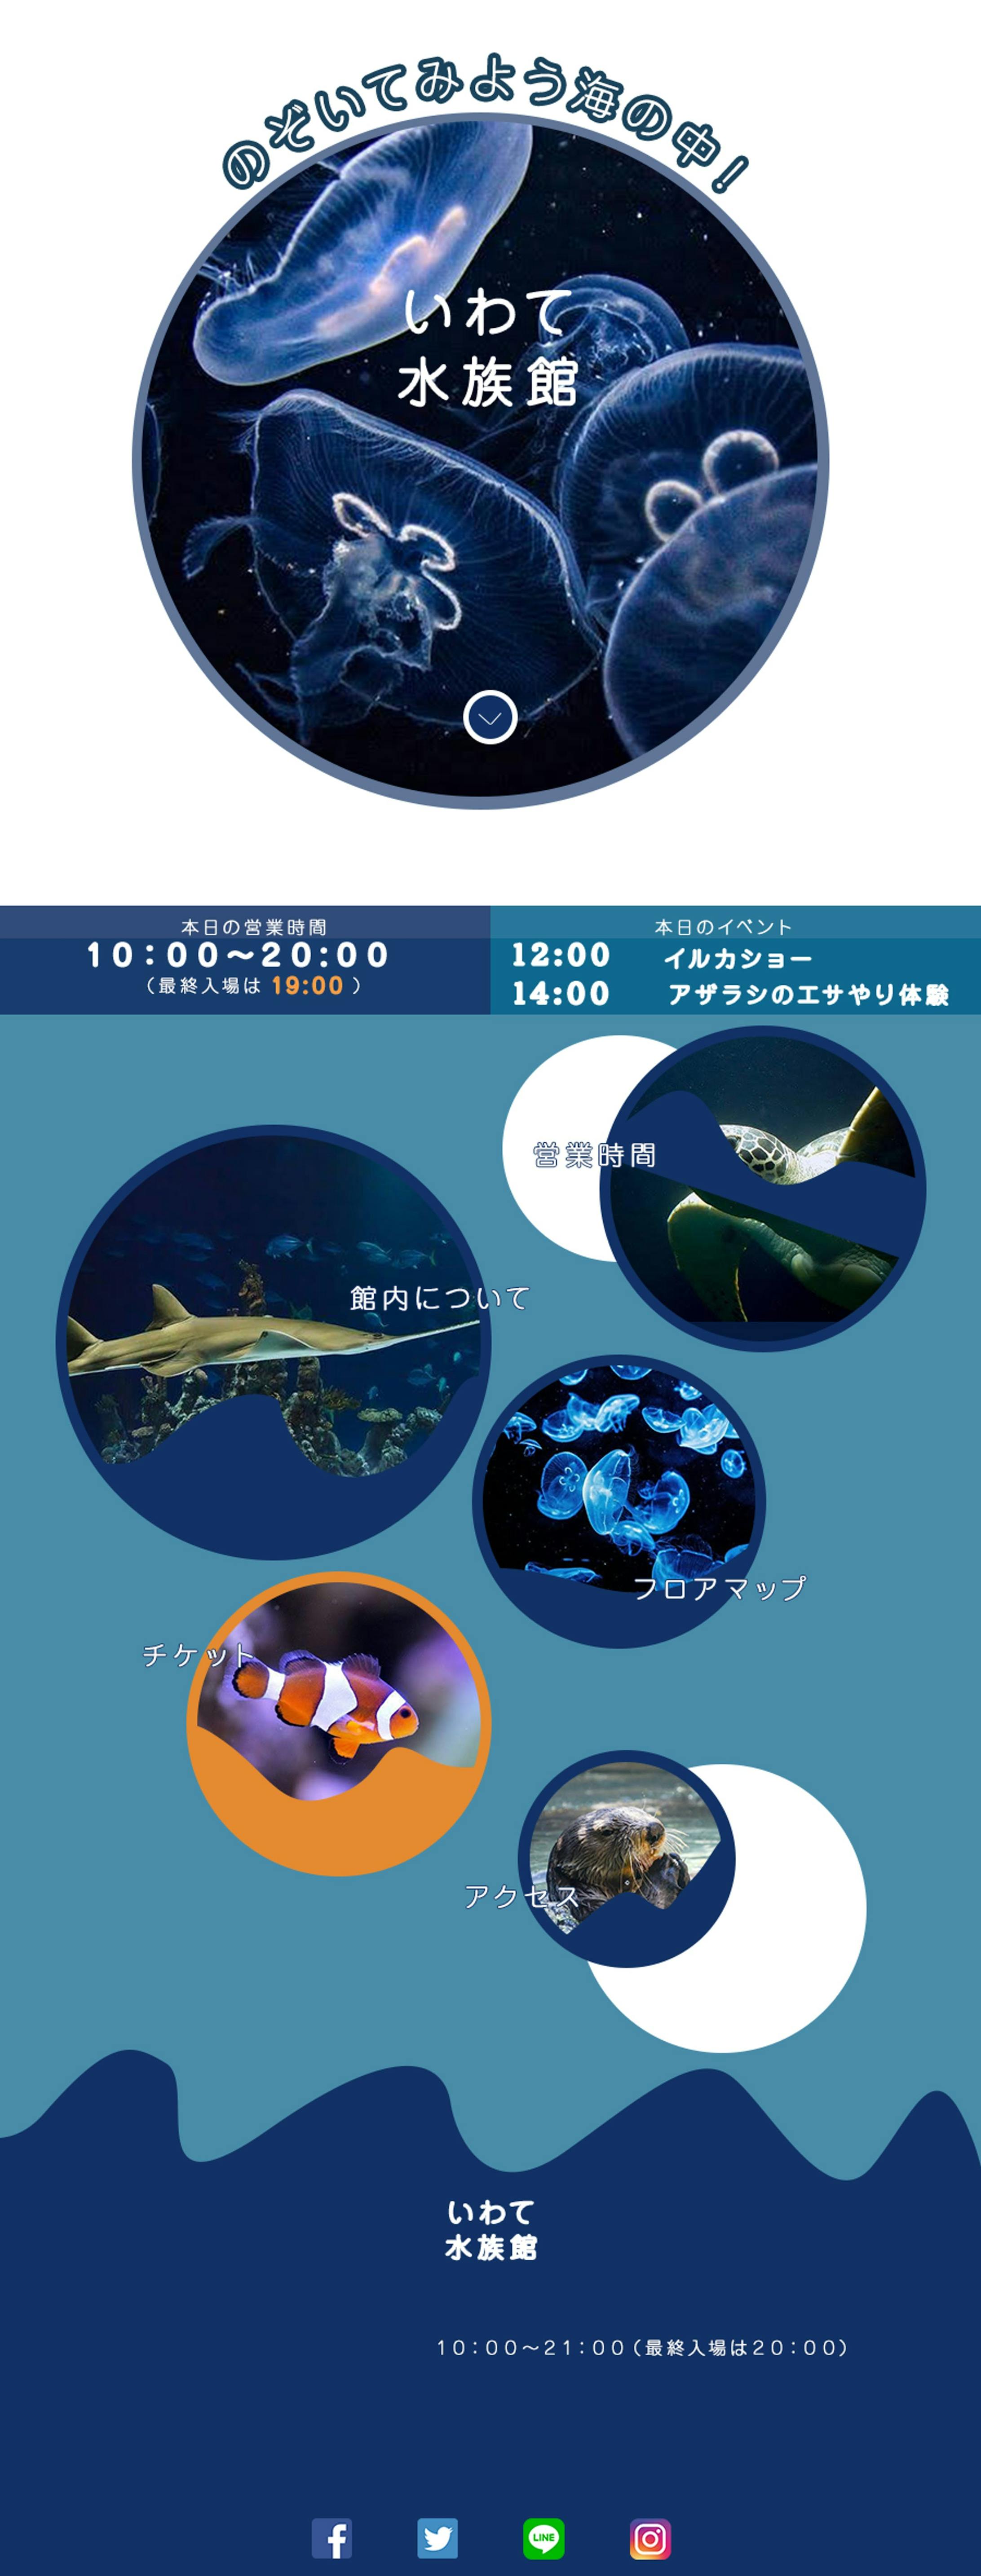 【2019.10】水族館のサイト01-1